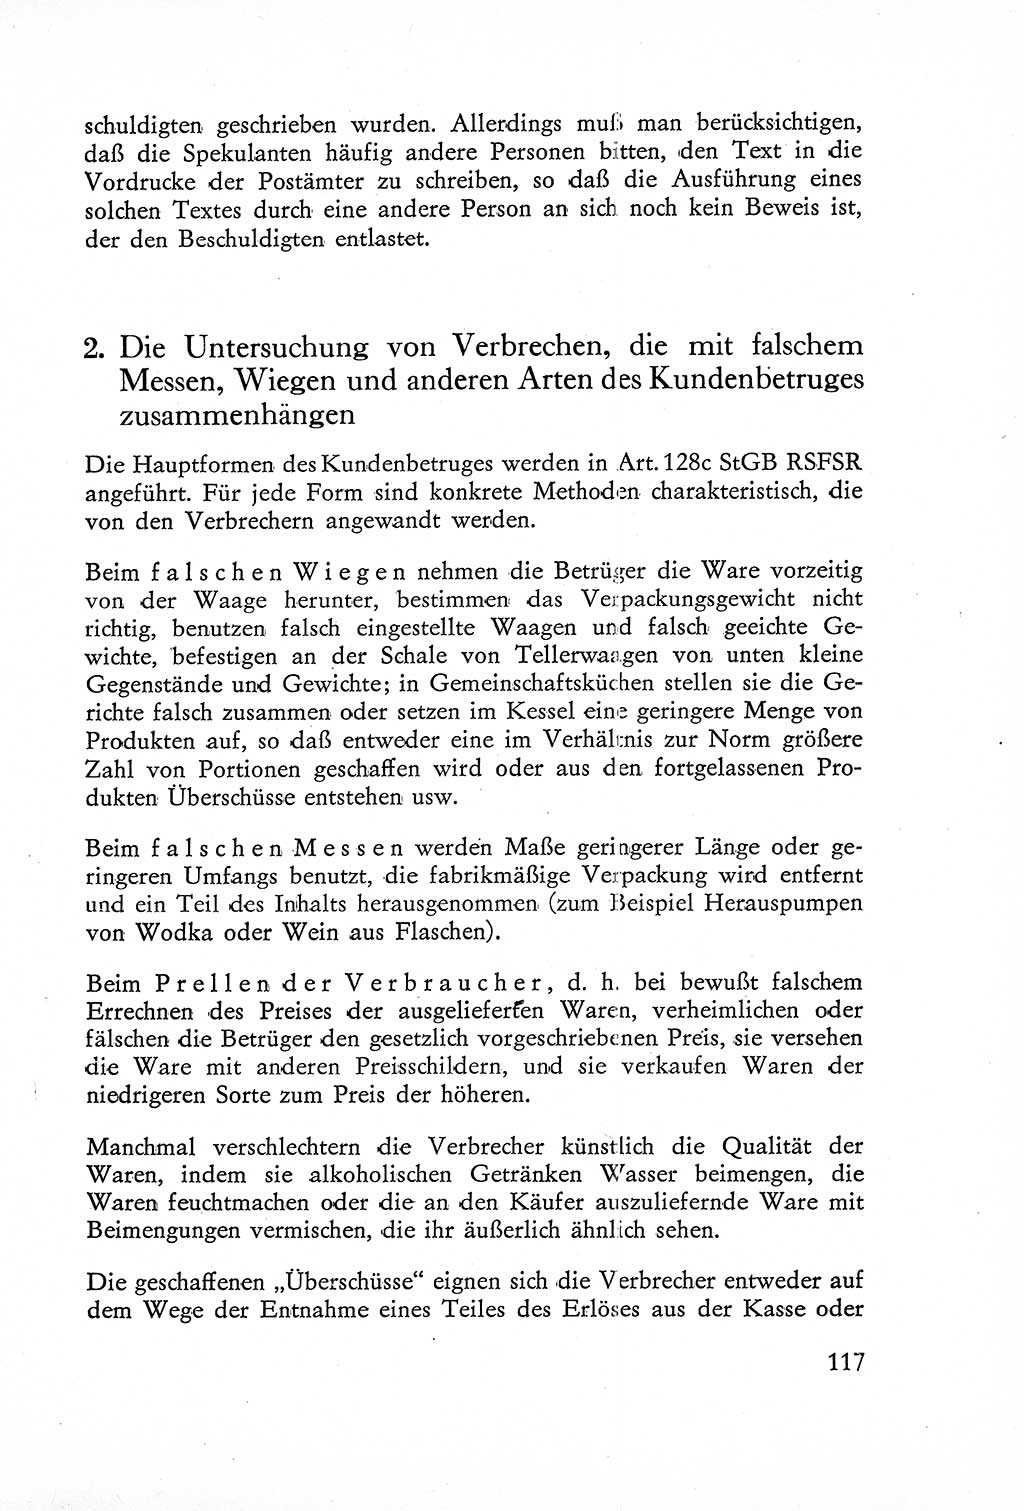 Die Untersuchung einzelner Verbrechensarten [Deutsche Demokratische Republik (DDR)] 1960, Seite 117 (Unters. Verbr.-Art. DDR 1960, S. 117)